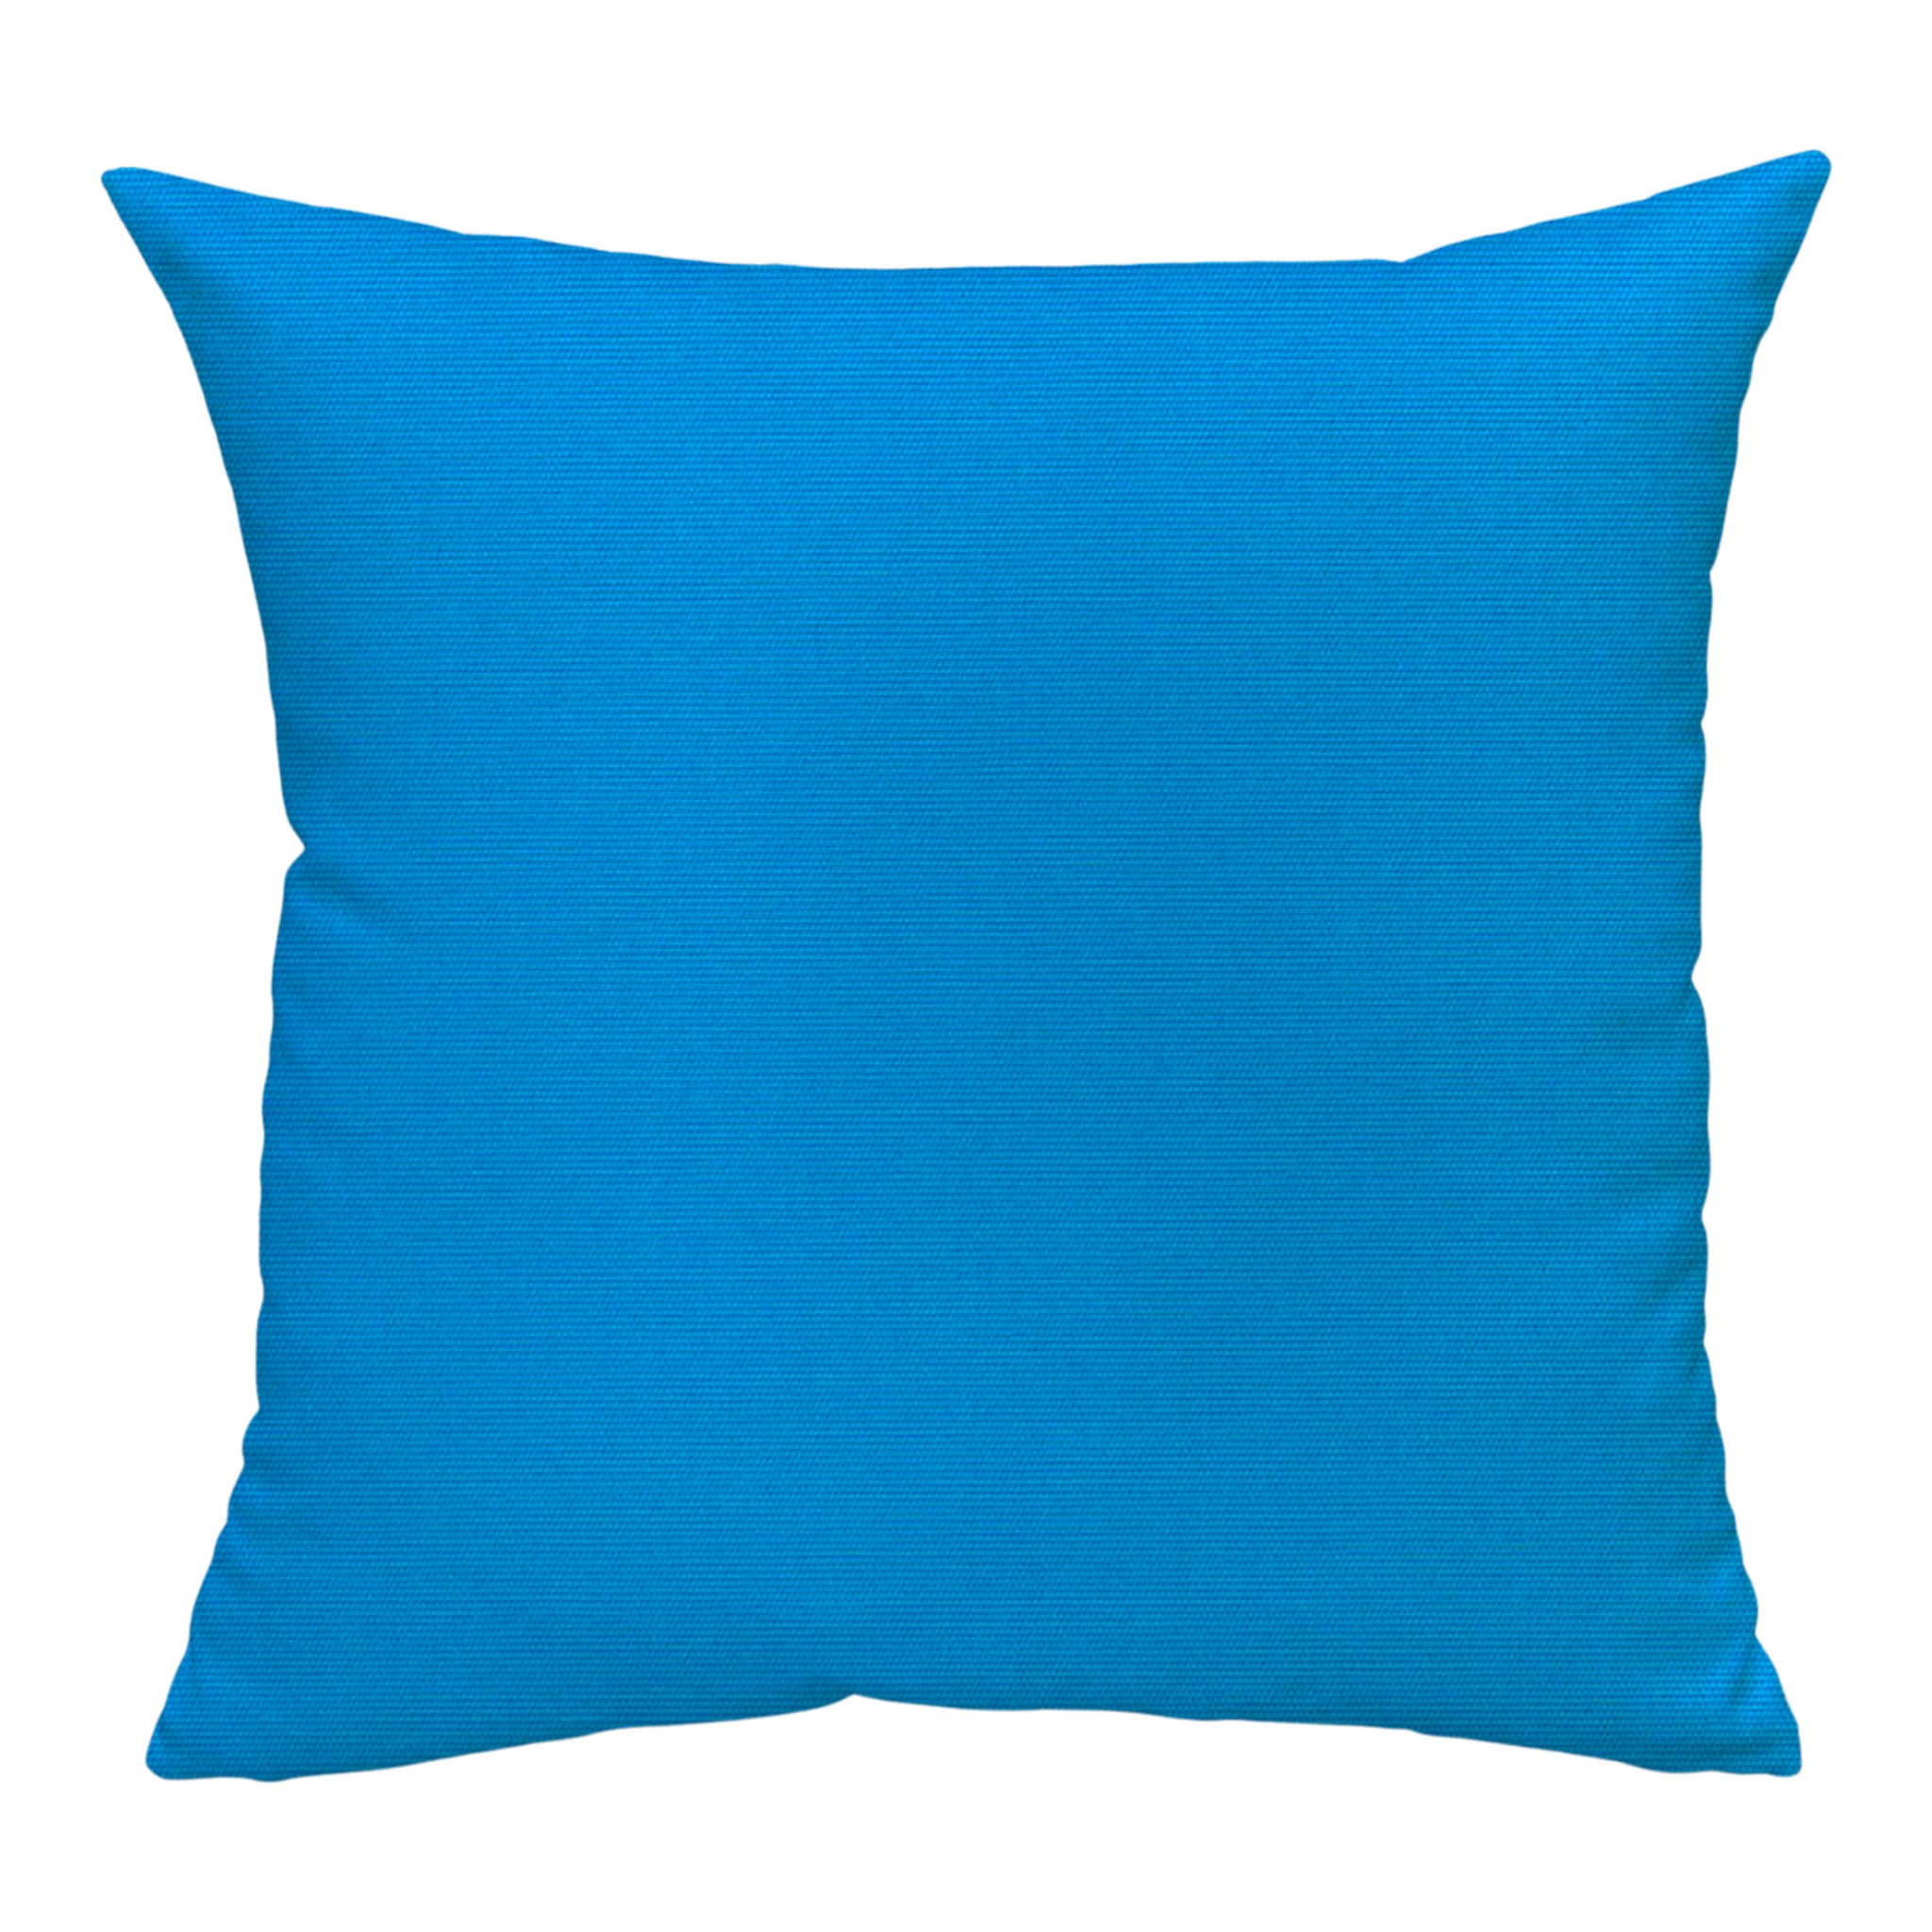 Sunbrella® Canvas Pillow in Pacific Blue